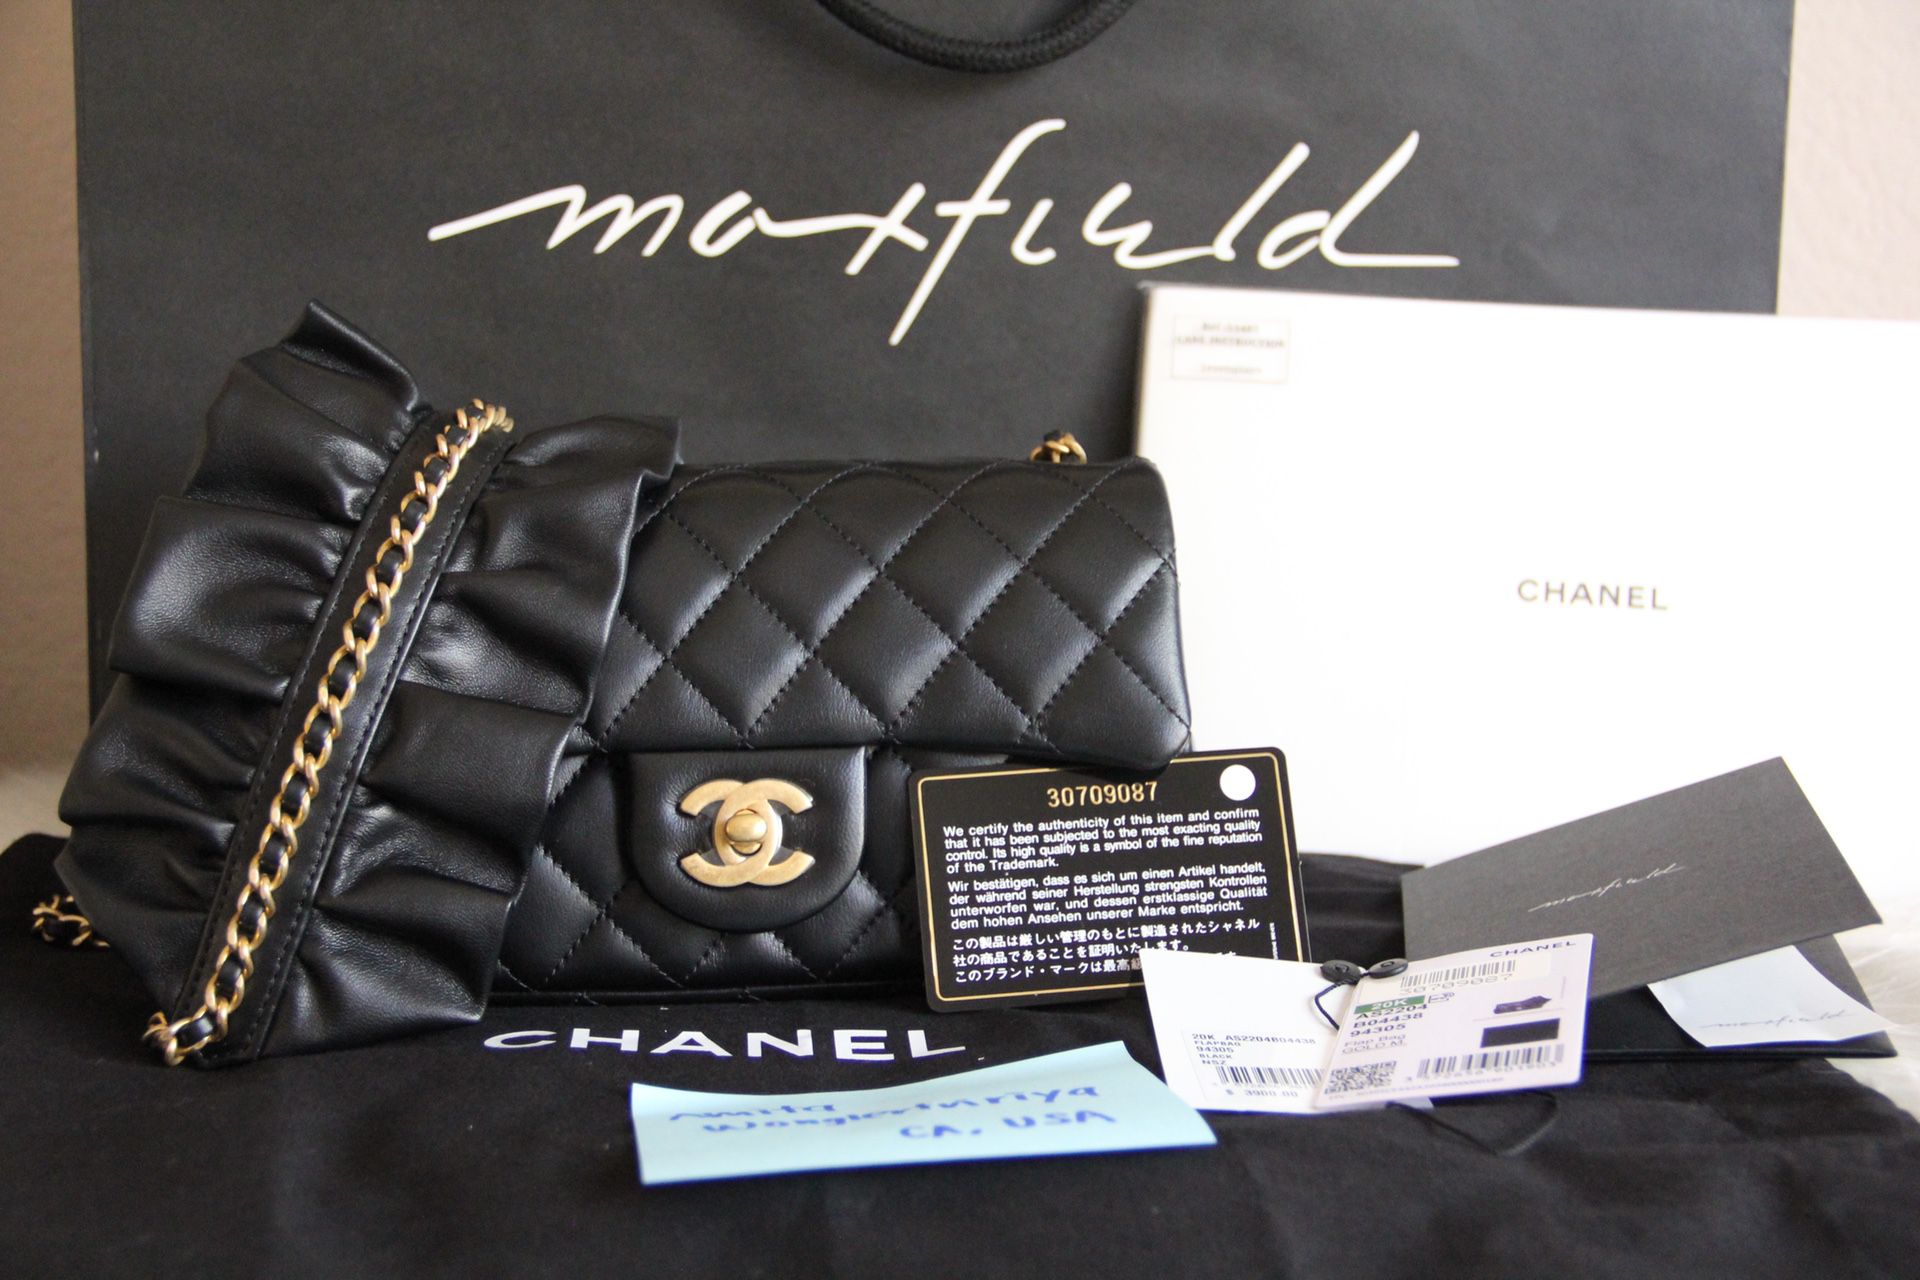 Authentic Chanel romance flap bag